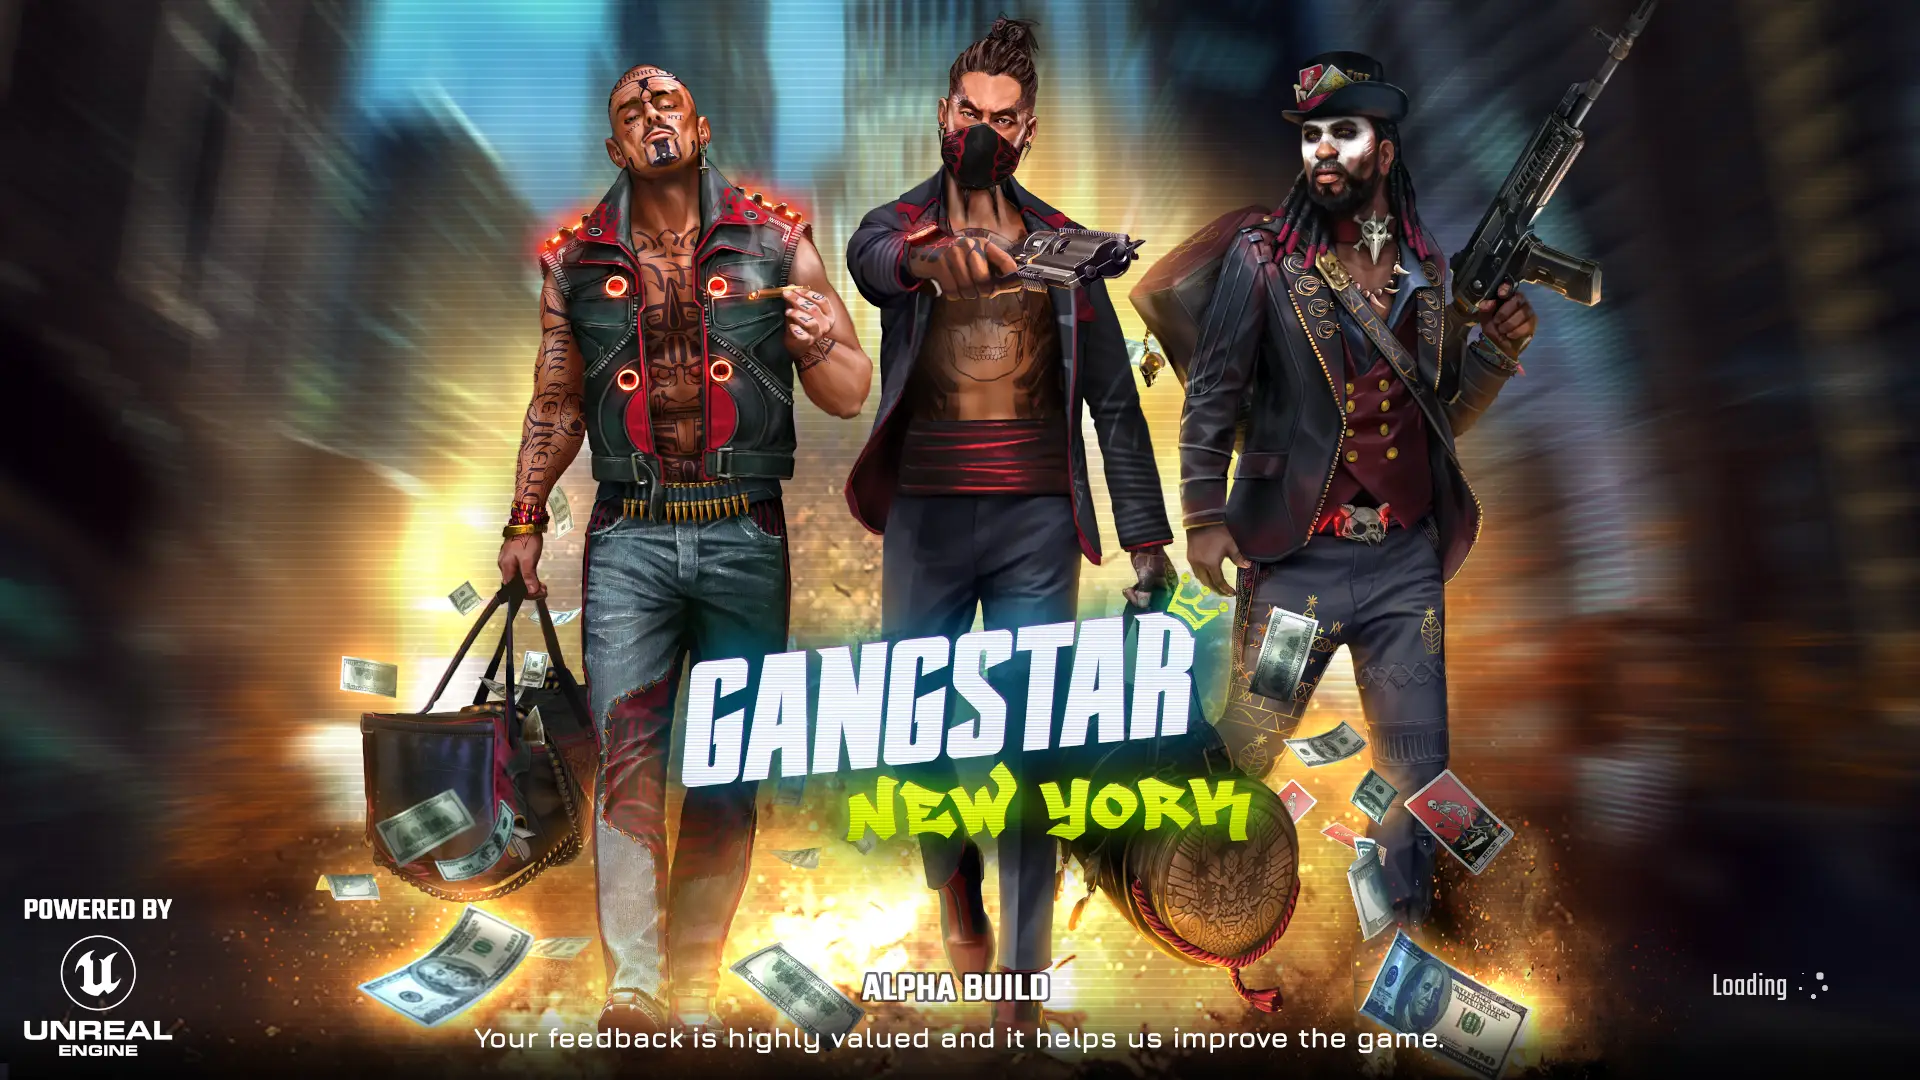 Pantalla de título de Gangstar New York, mostrando 3 personajes